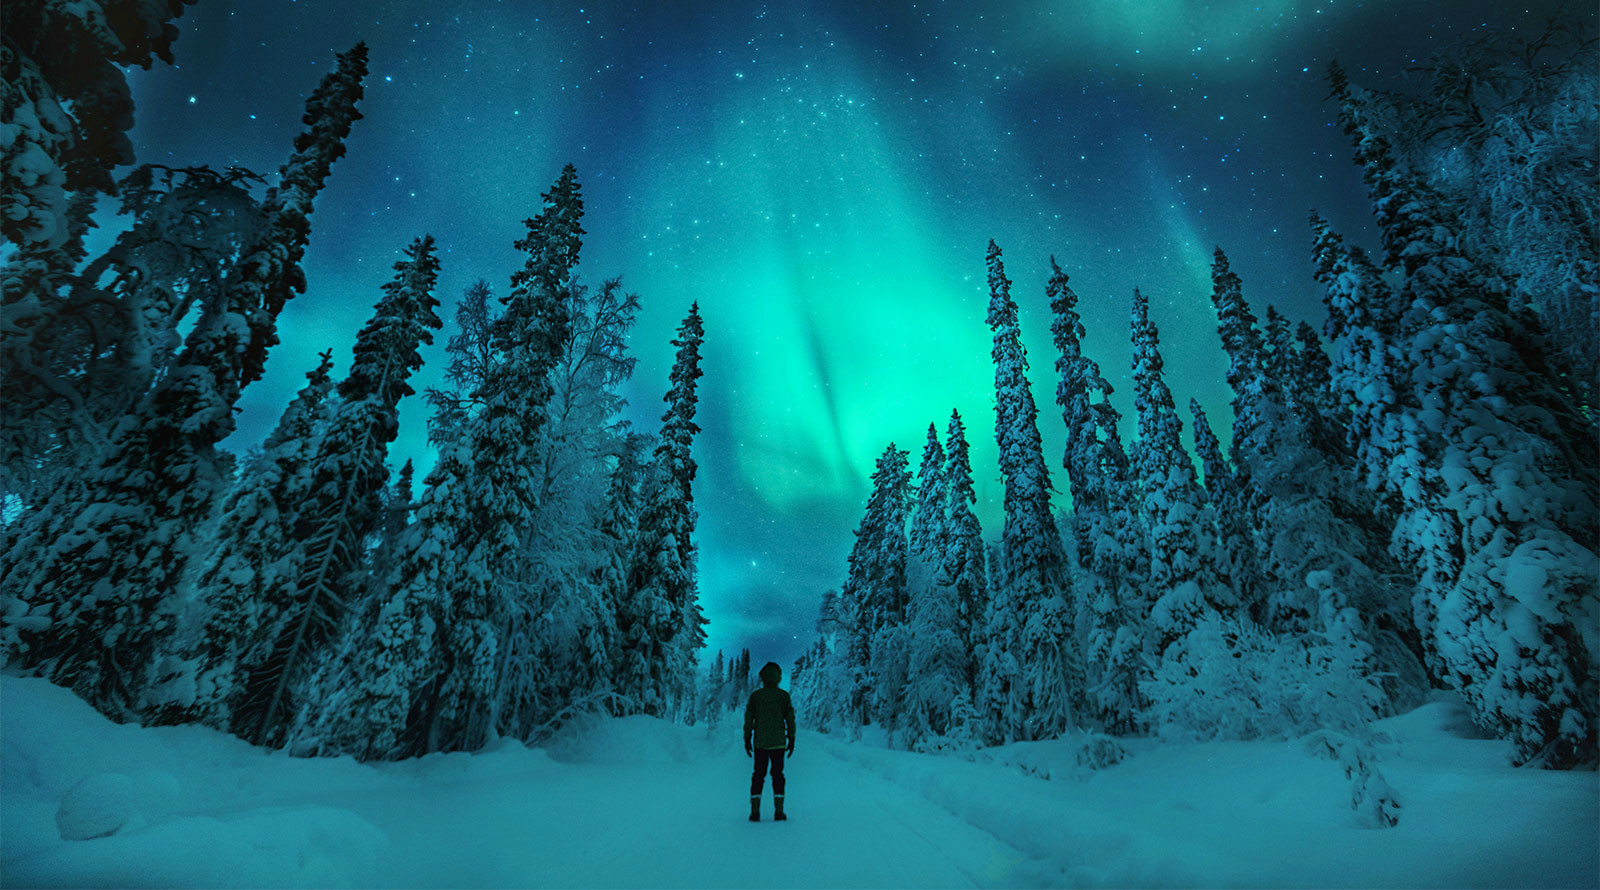 【极光之旅】 芬兰拉普兰10天8晚私家小团/玻璃穹顶追梦北极光